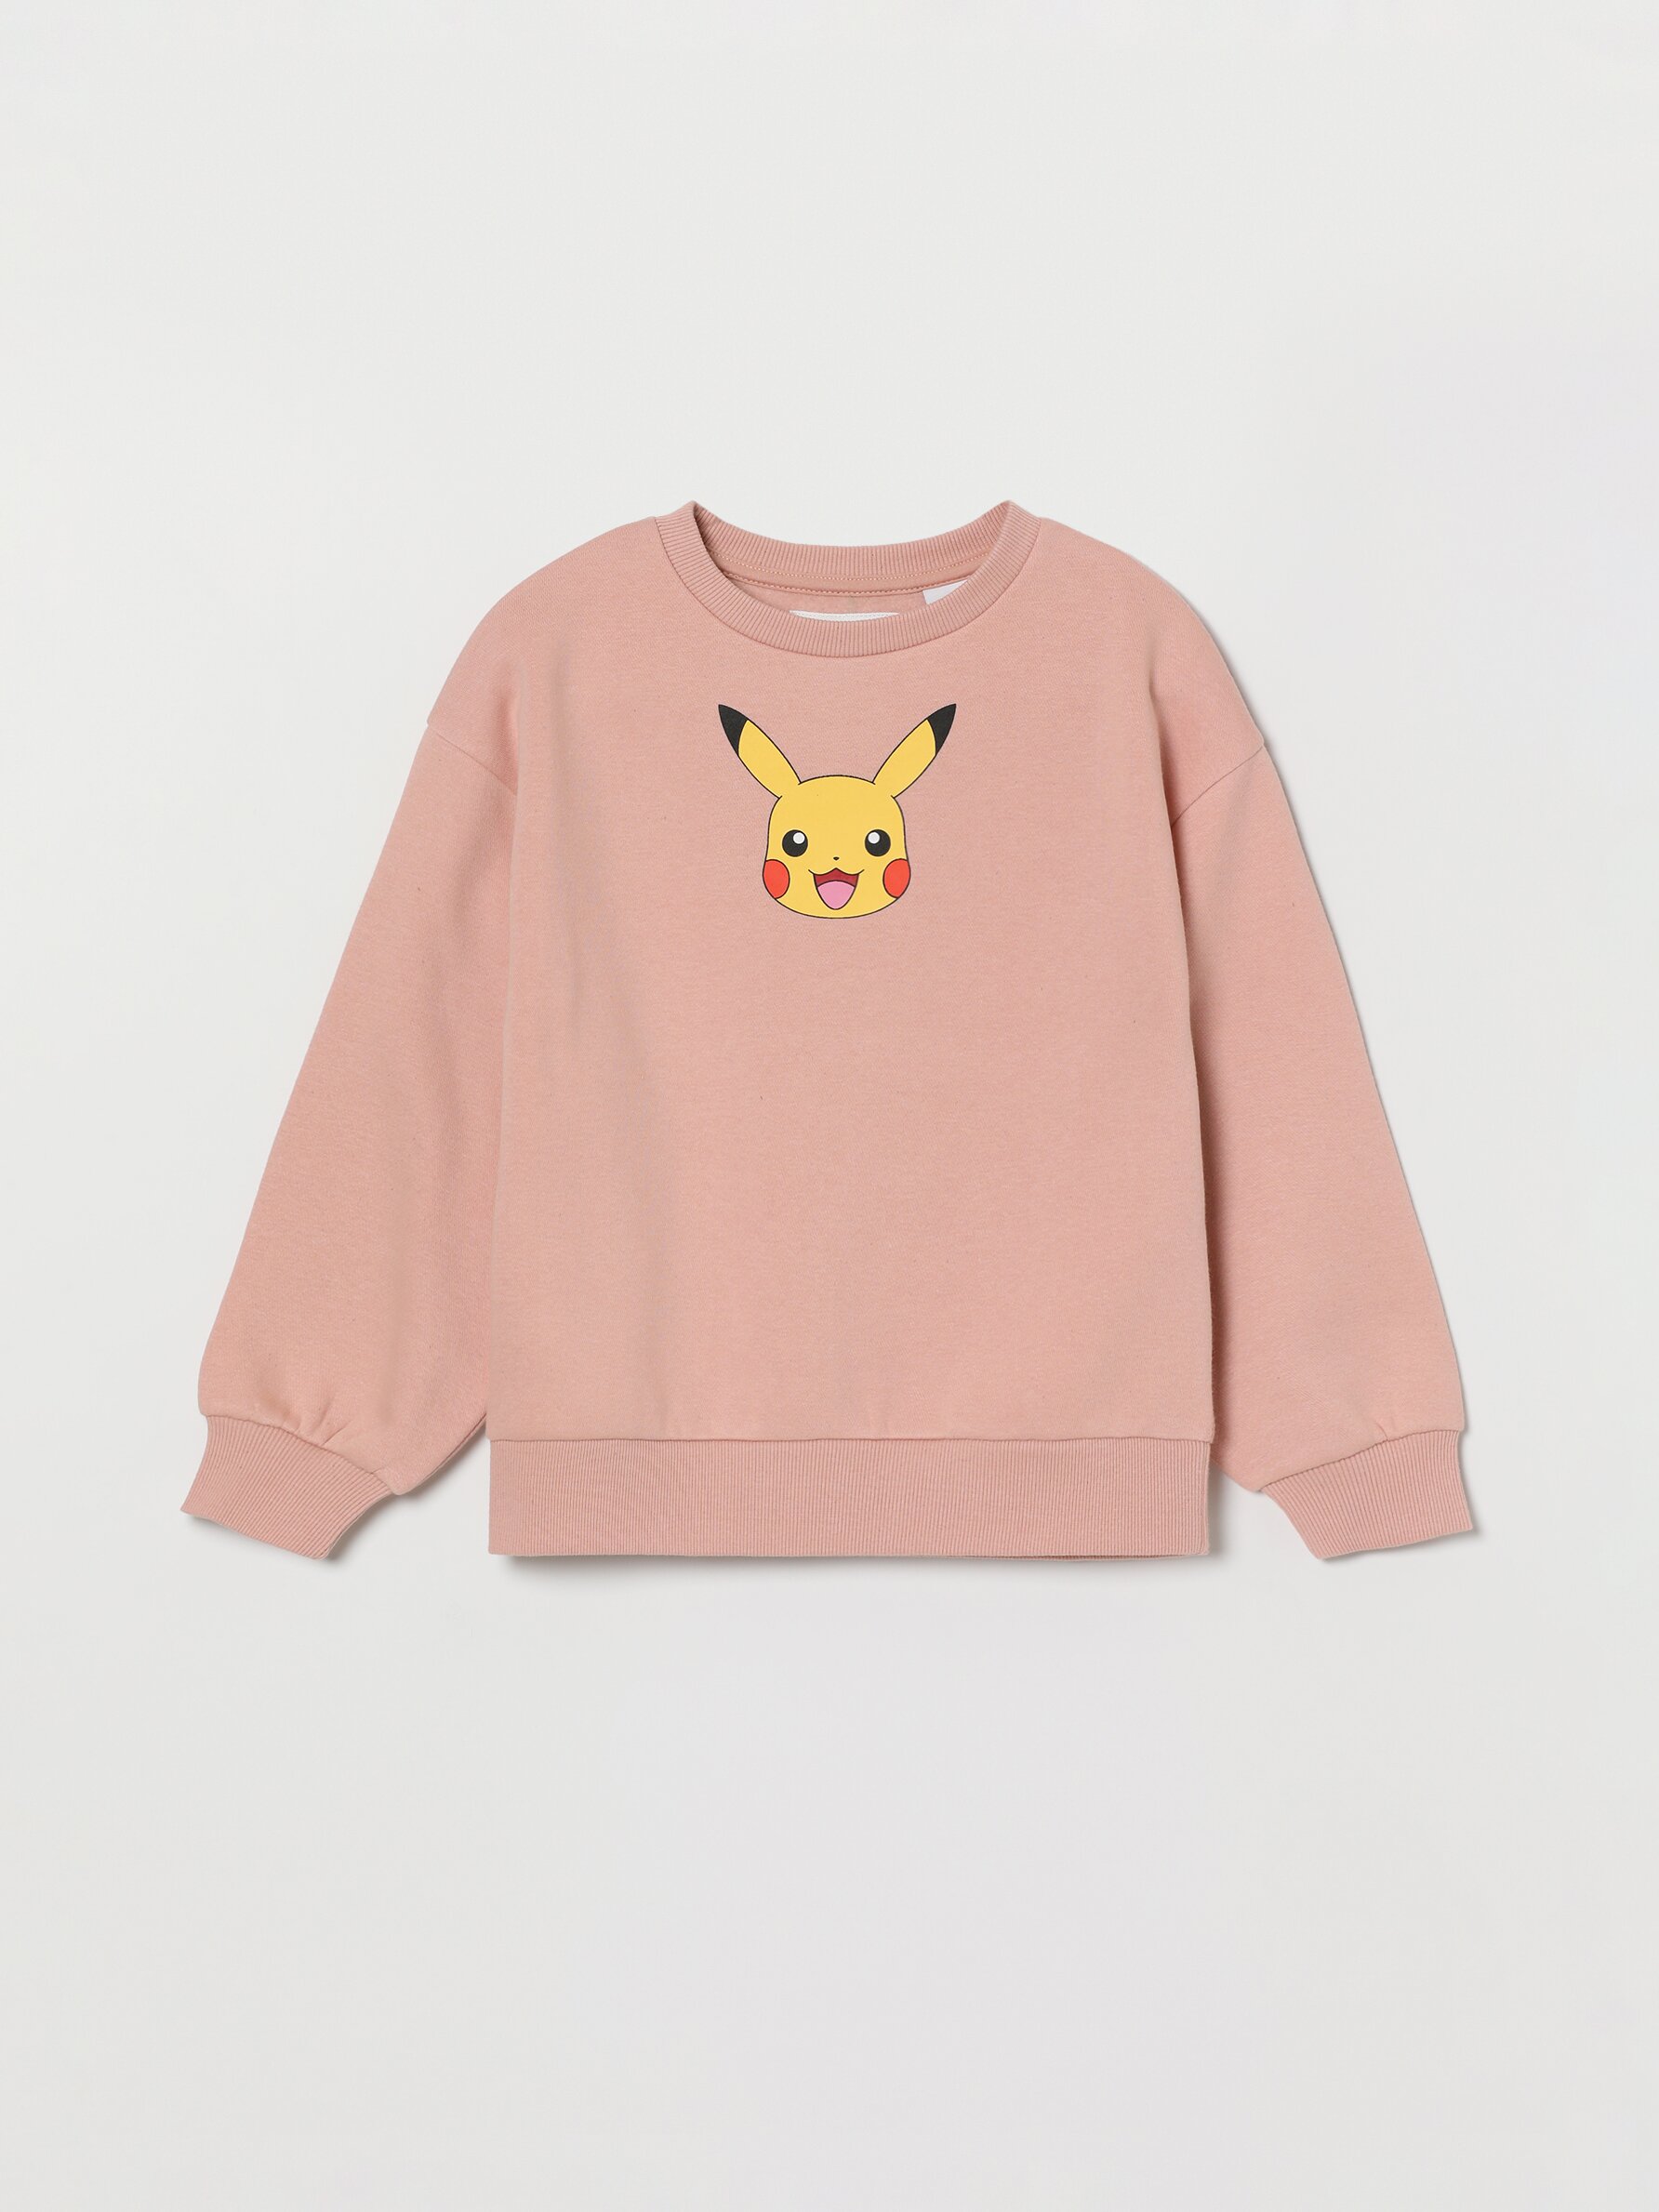 Popgear Conjunto de Sudadera con Capucha Y Pantalones Deportivos para Niñas con Logotipo de Pikachu Color Gris Y Amarillo Moda 